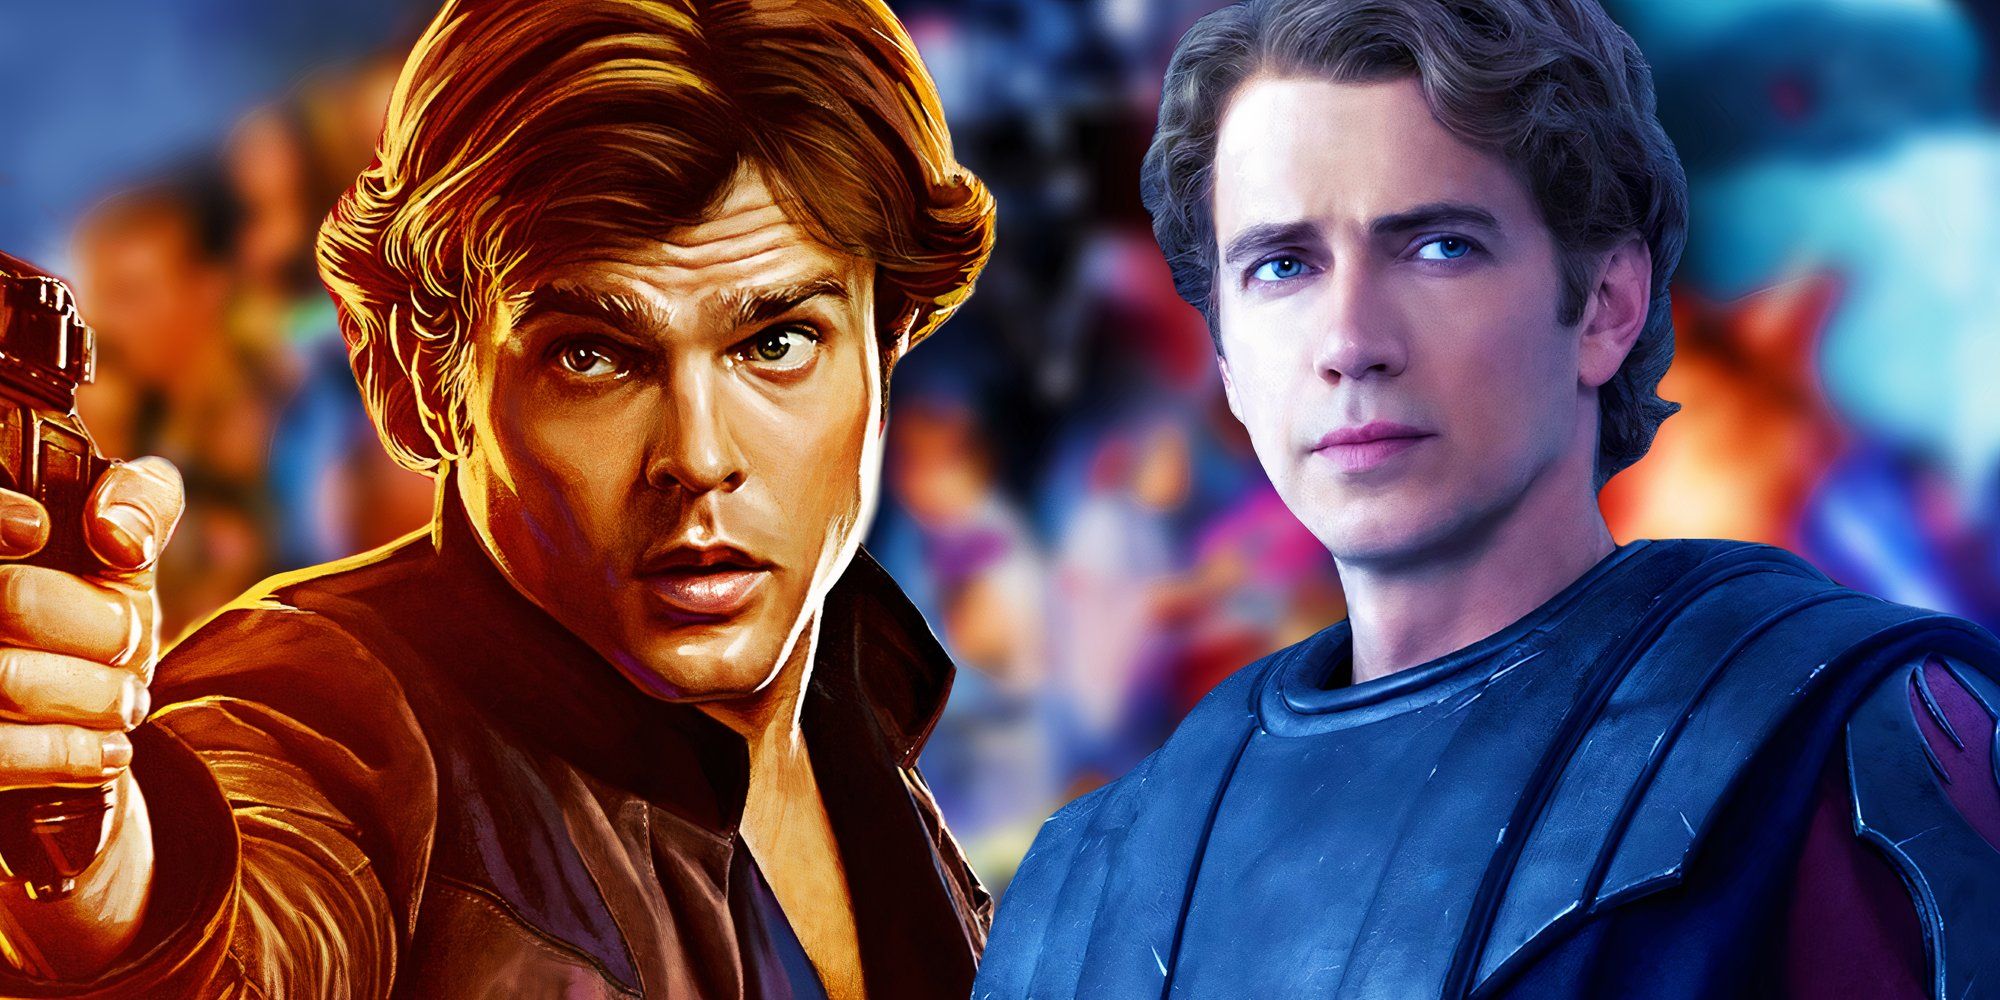 A blurred image of the Skywalker Saga behind Alden Ehrenreich as Han Solo and Hayden Christensen as Anakin Skywlalker